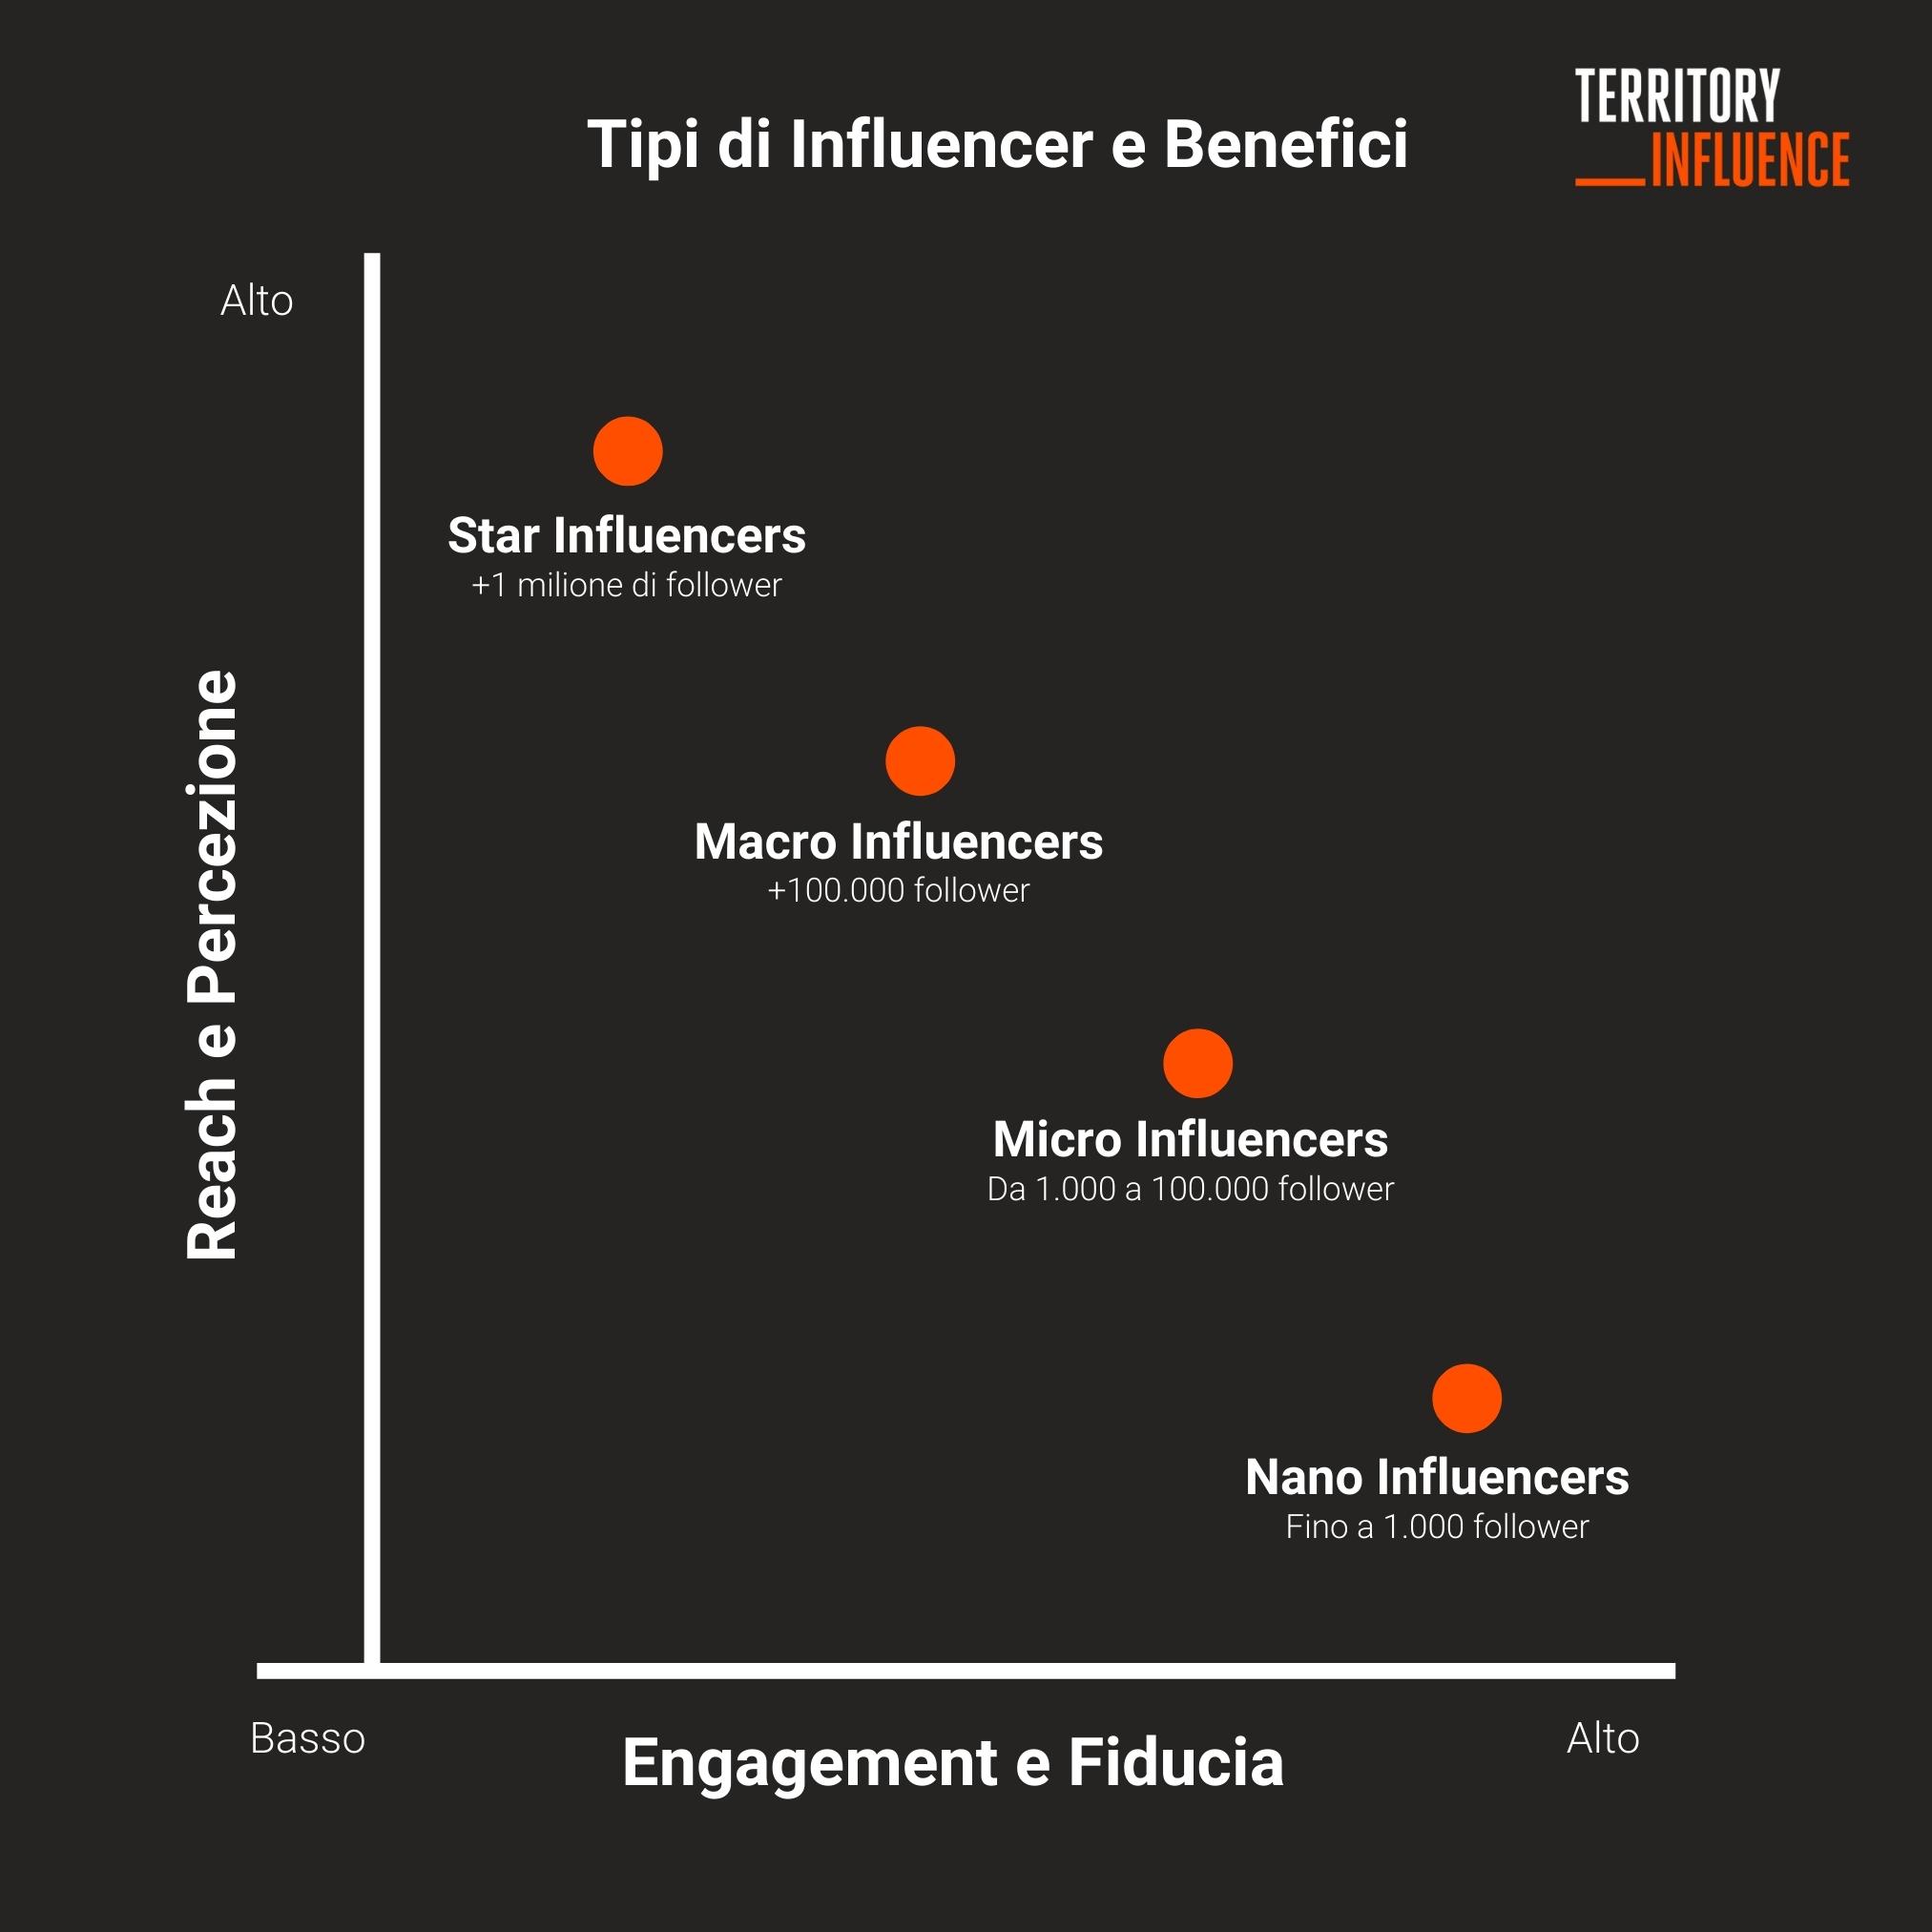 Tipi di influencer e benefici